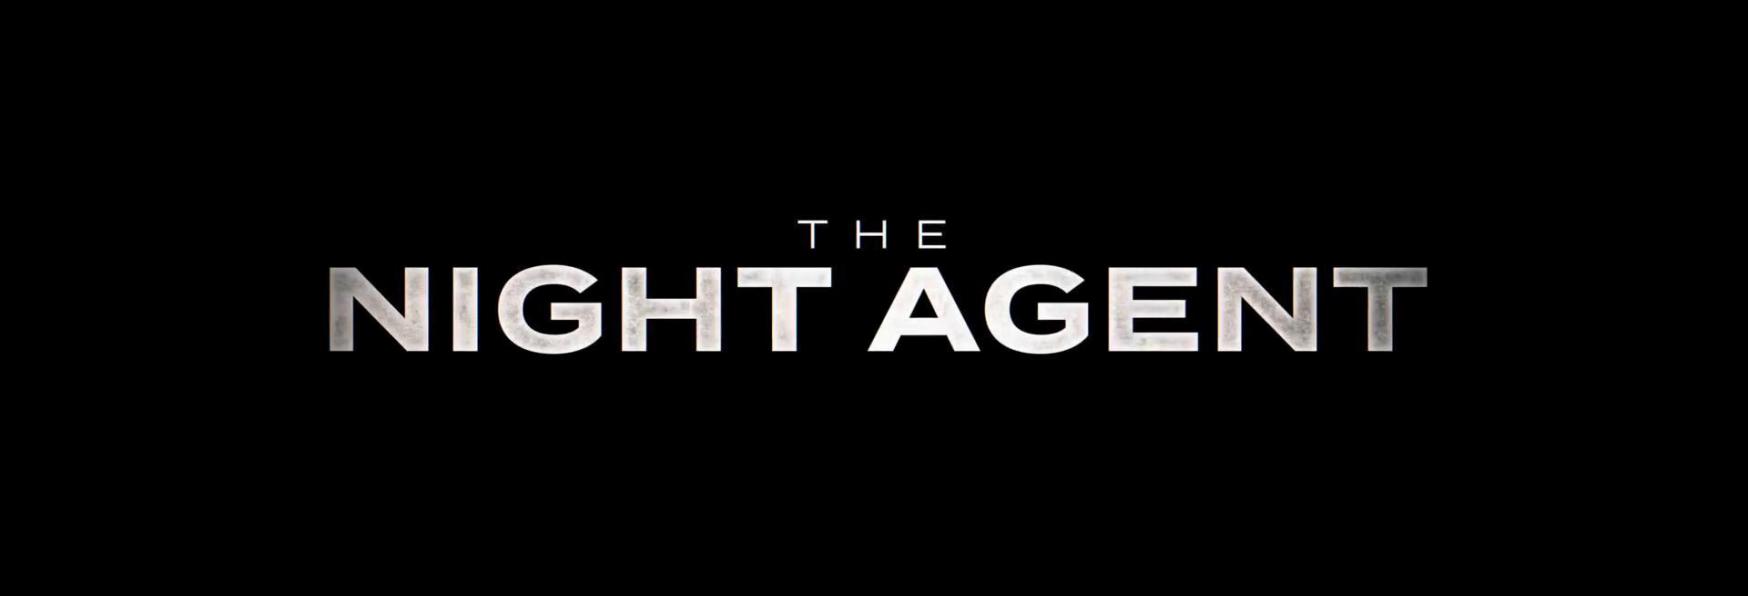 The Night Agent: Trama, Cast, Personaggi, Trailer e Data di Uscita della nuova Serie TV Adattamento di Netflix